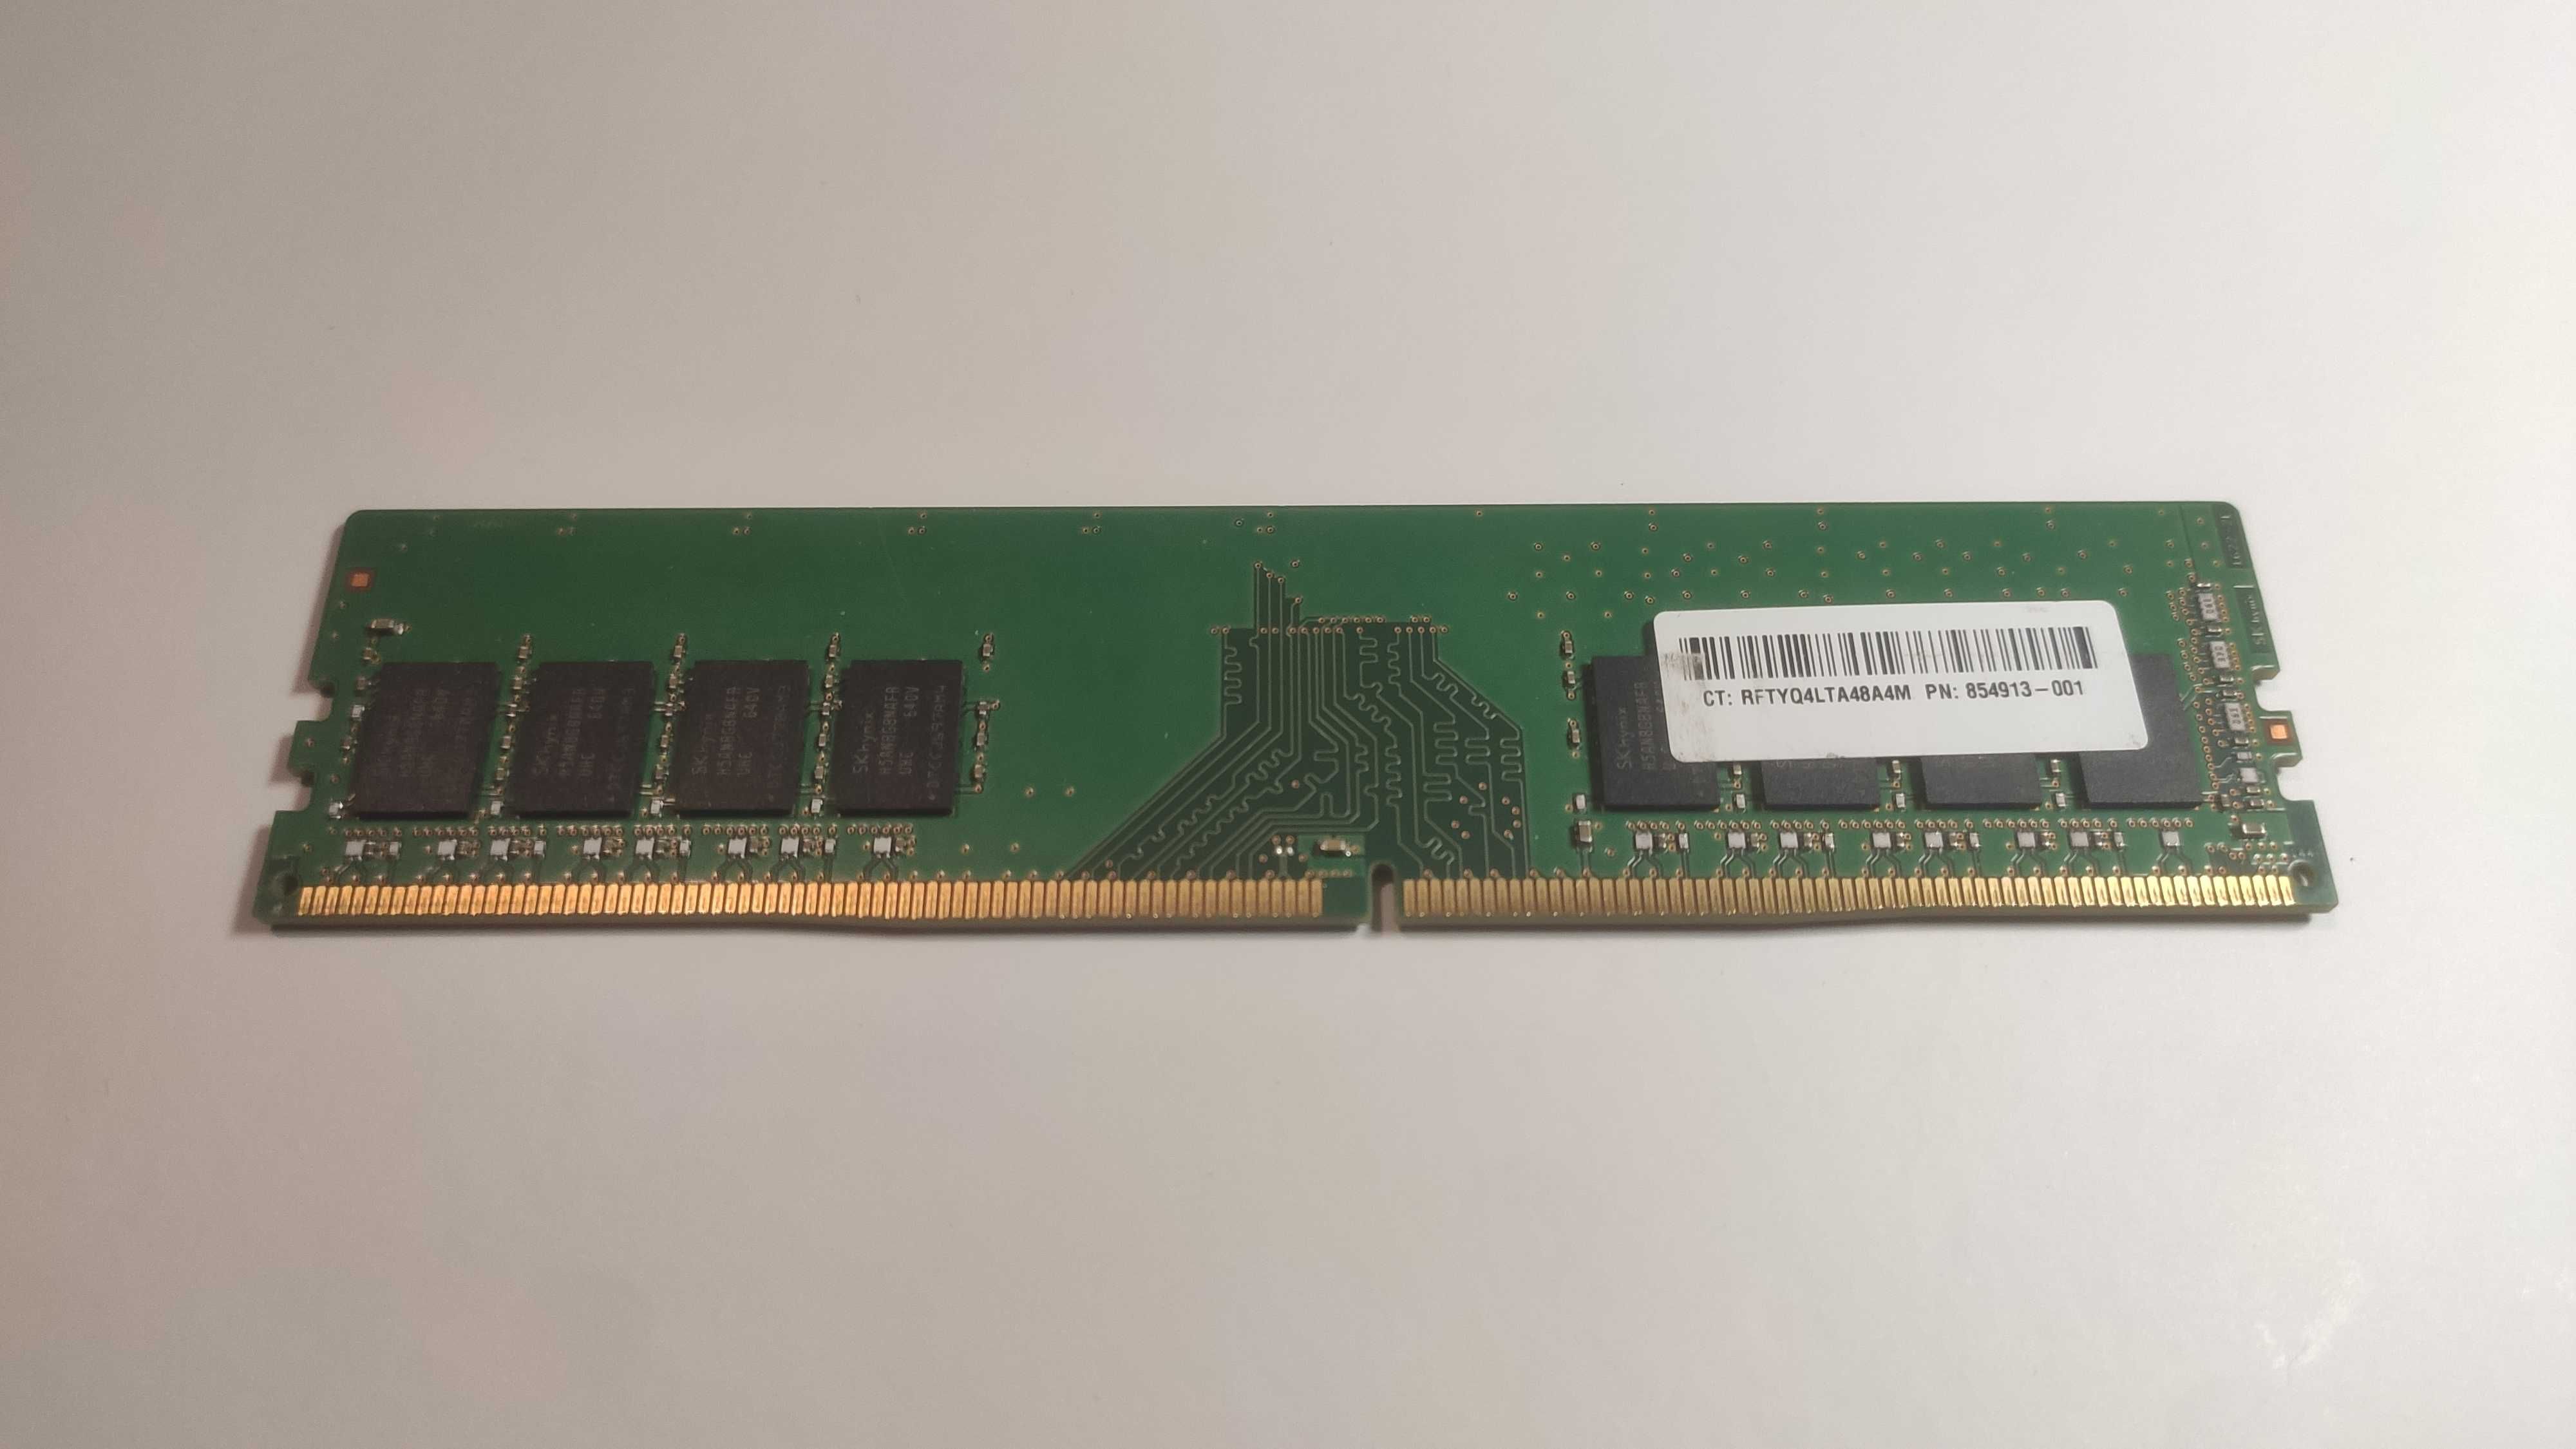 3х8gb (8, 16, 24gb) DDR4 2400T 'Hynix HMA81GU6AFR8N